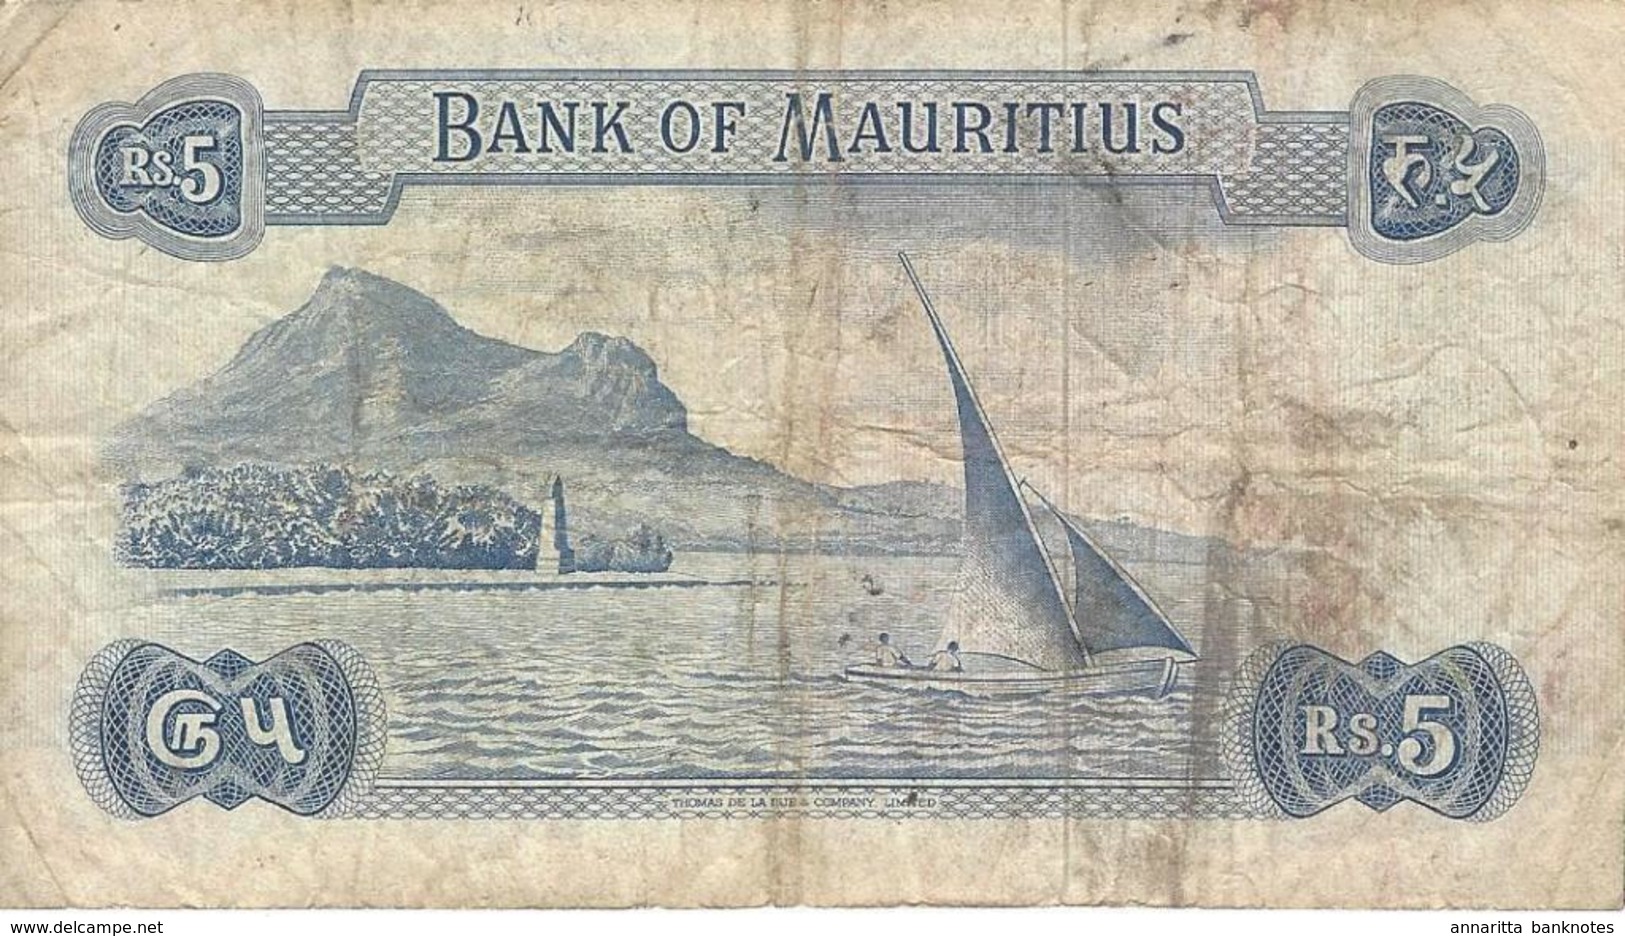 Mauritius (BOM) 5 Rupees ND (1973) S/N A/46 344447 VF Cat No. P-30c / MU401c - Mauritius